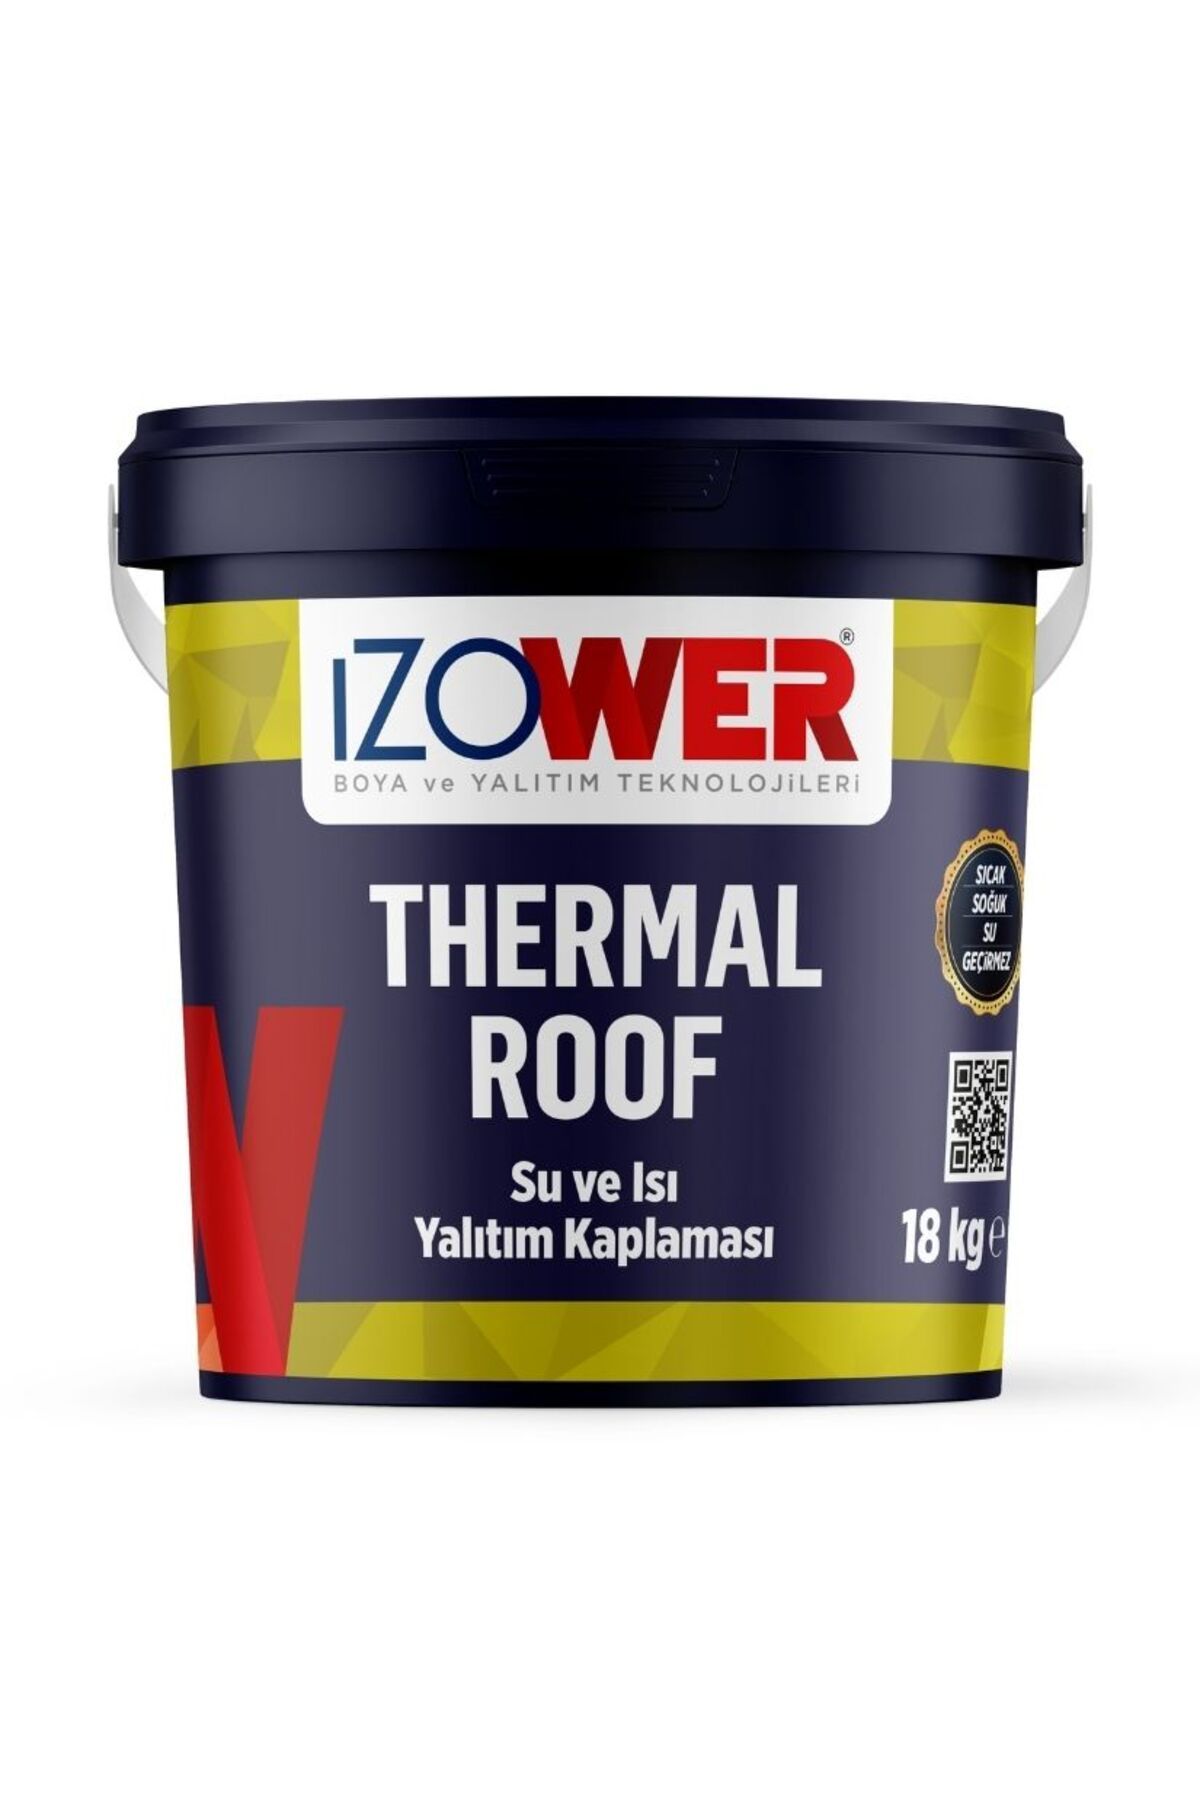 izower Thermal Roof Isı ve Su Yalıtımı gr 18 kg